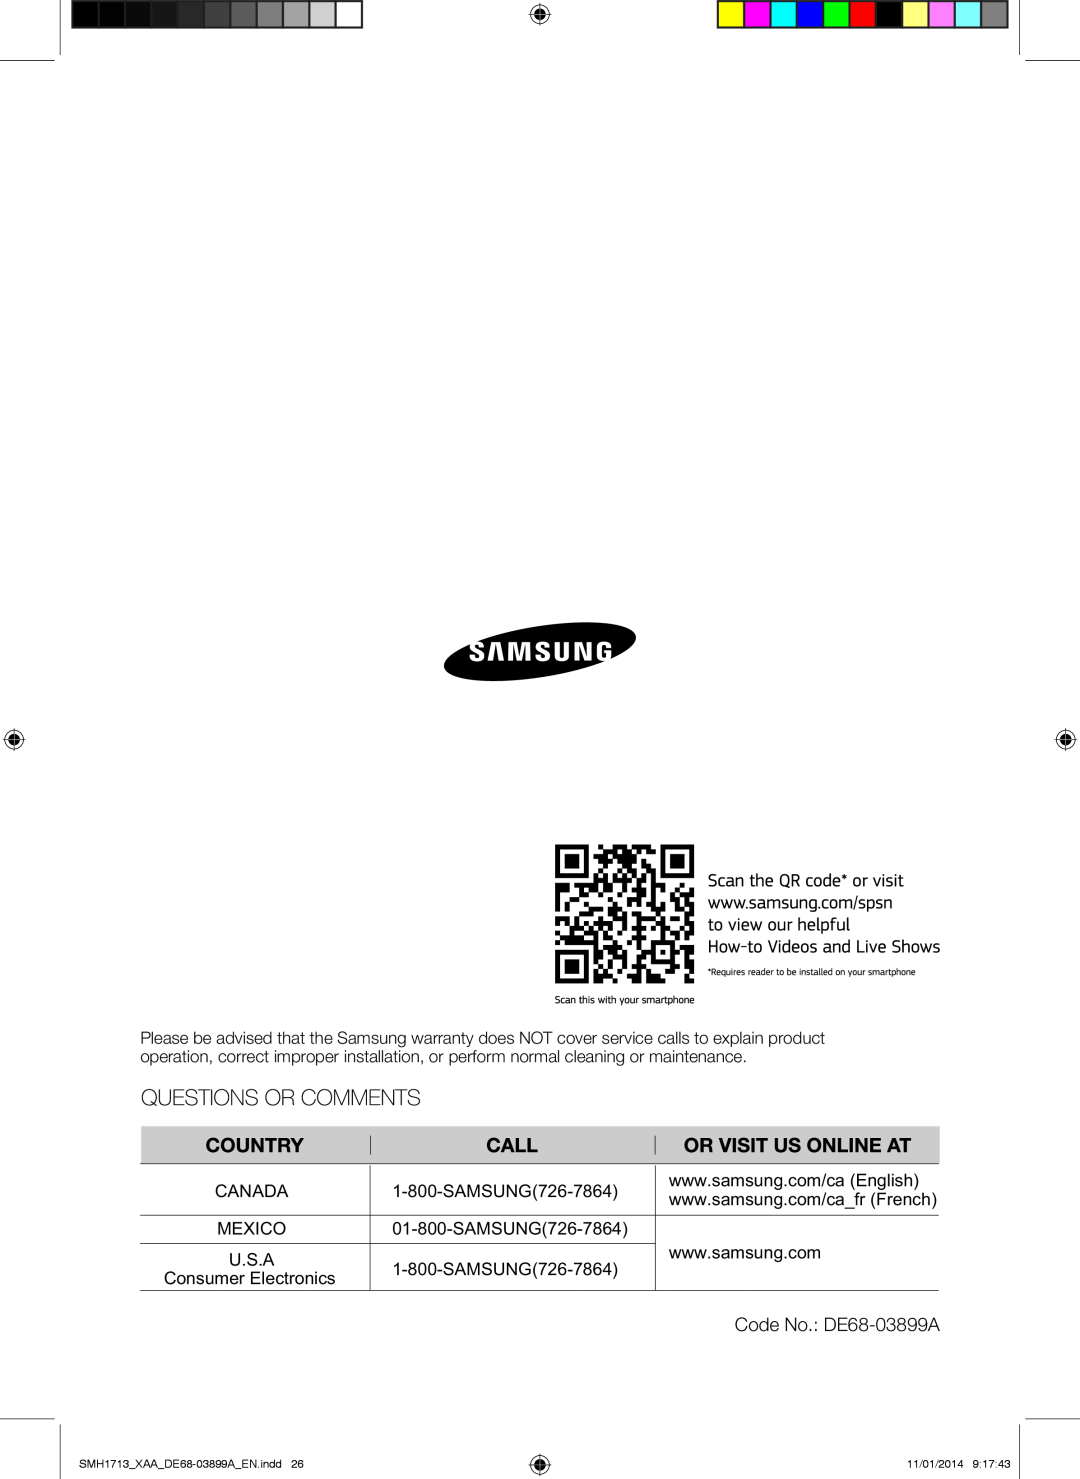 Samsung user manual Code No. DE68-03899A, Consumer Electronics, SMH1713XAADE68-03899AEN.indd, 11/01/2014 